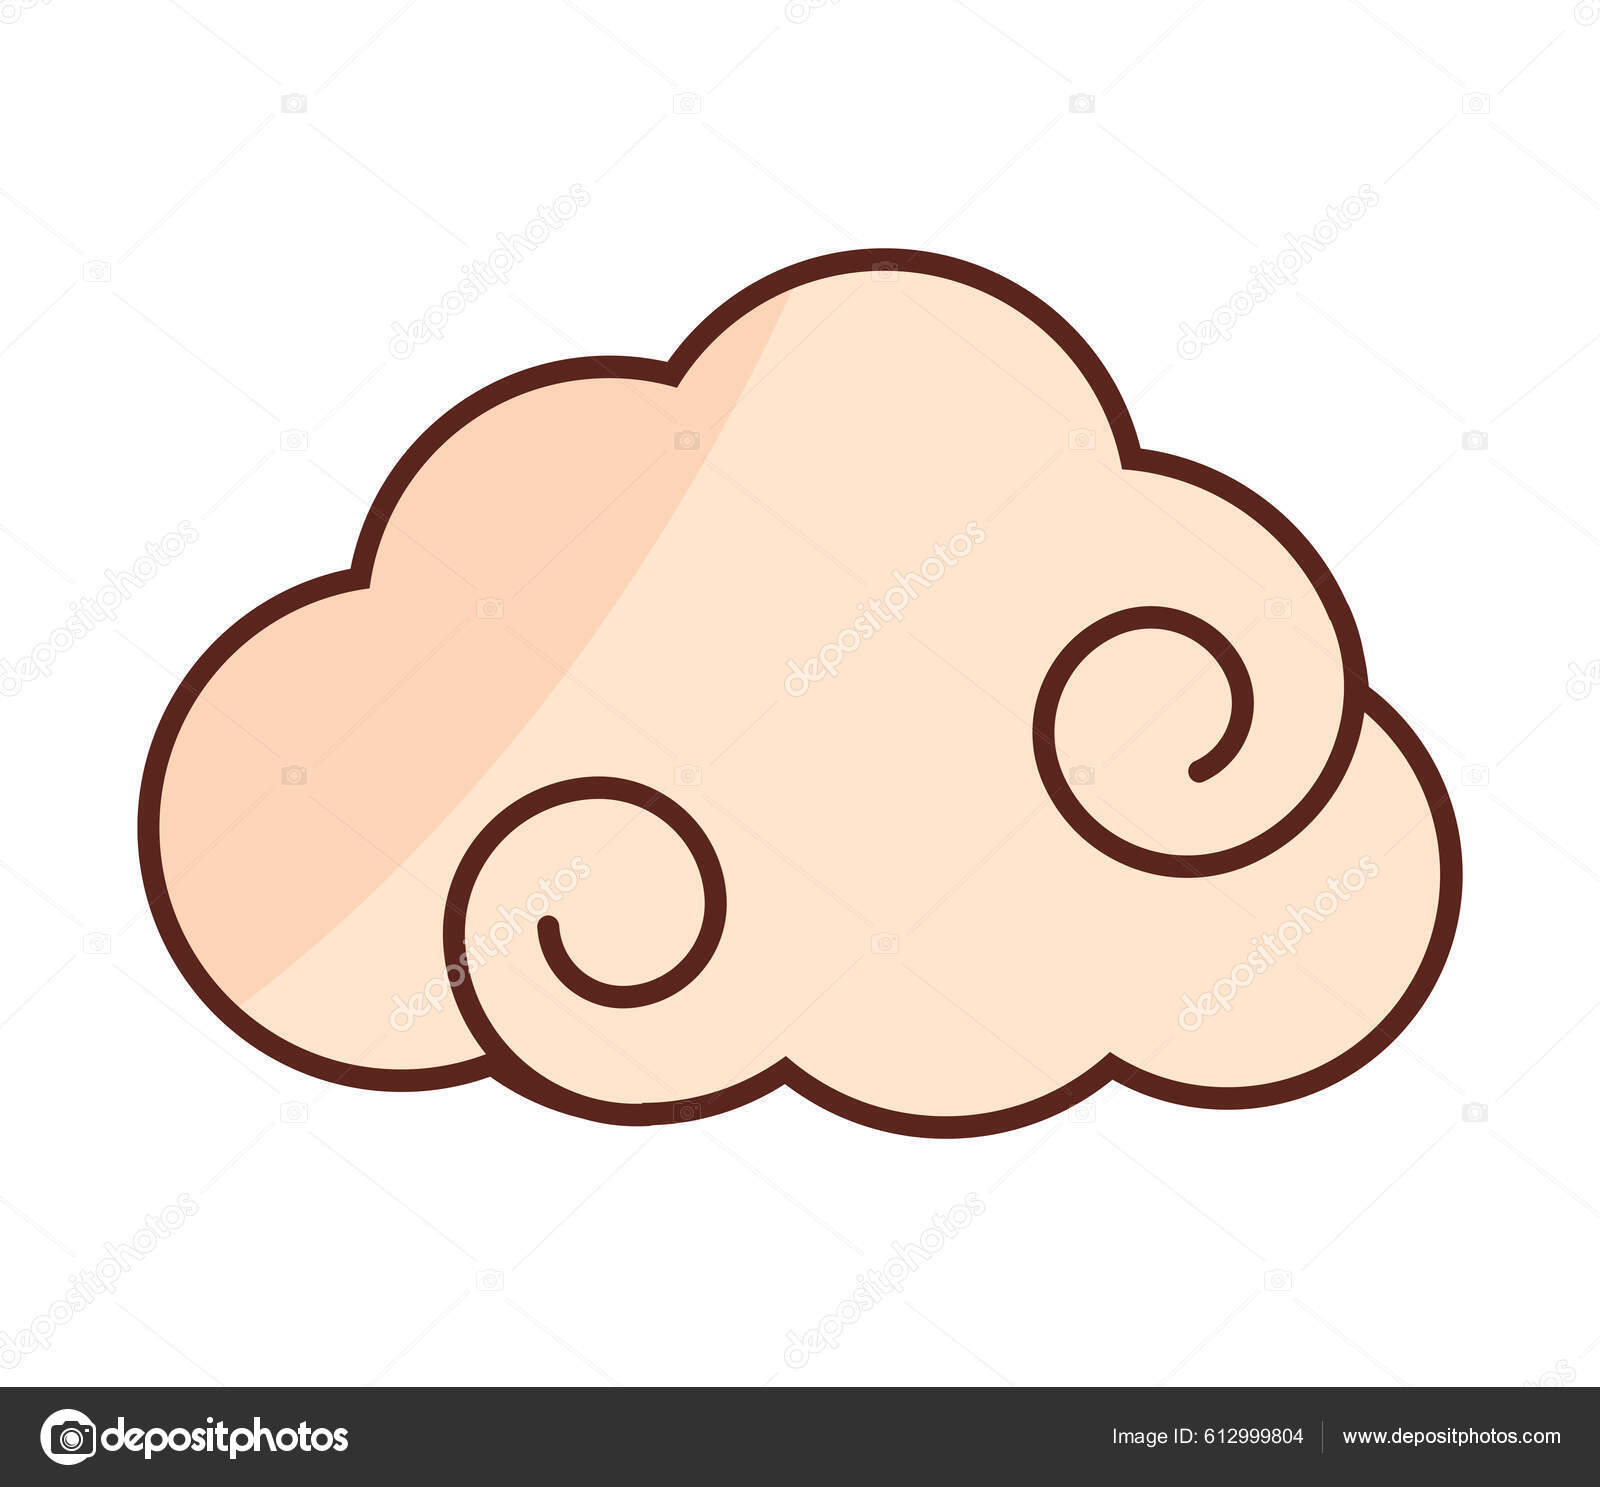 Uma nuvem de desenho animado com uma nuvem e as palavras nuvem